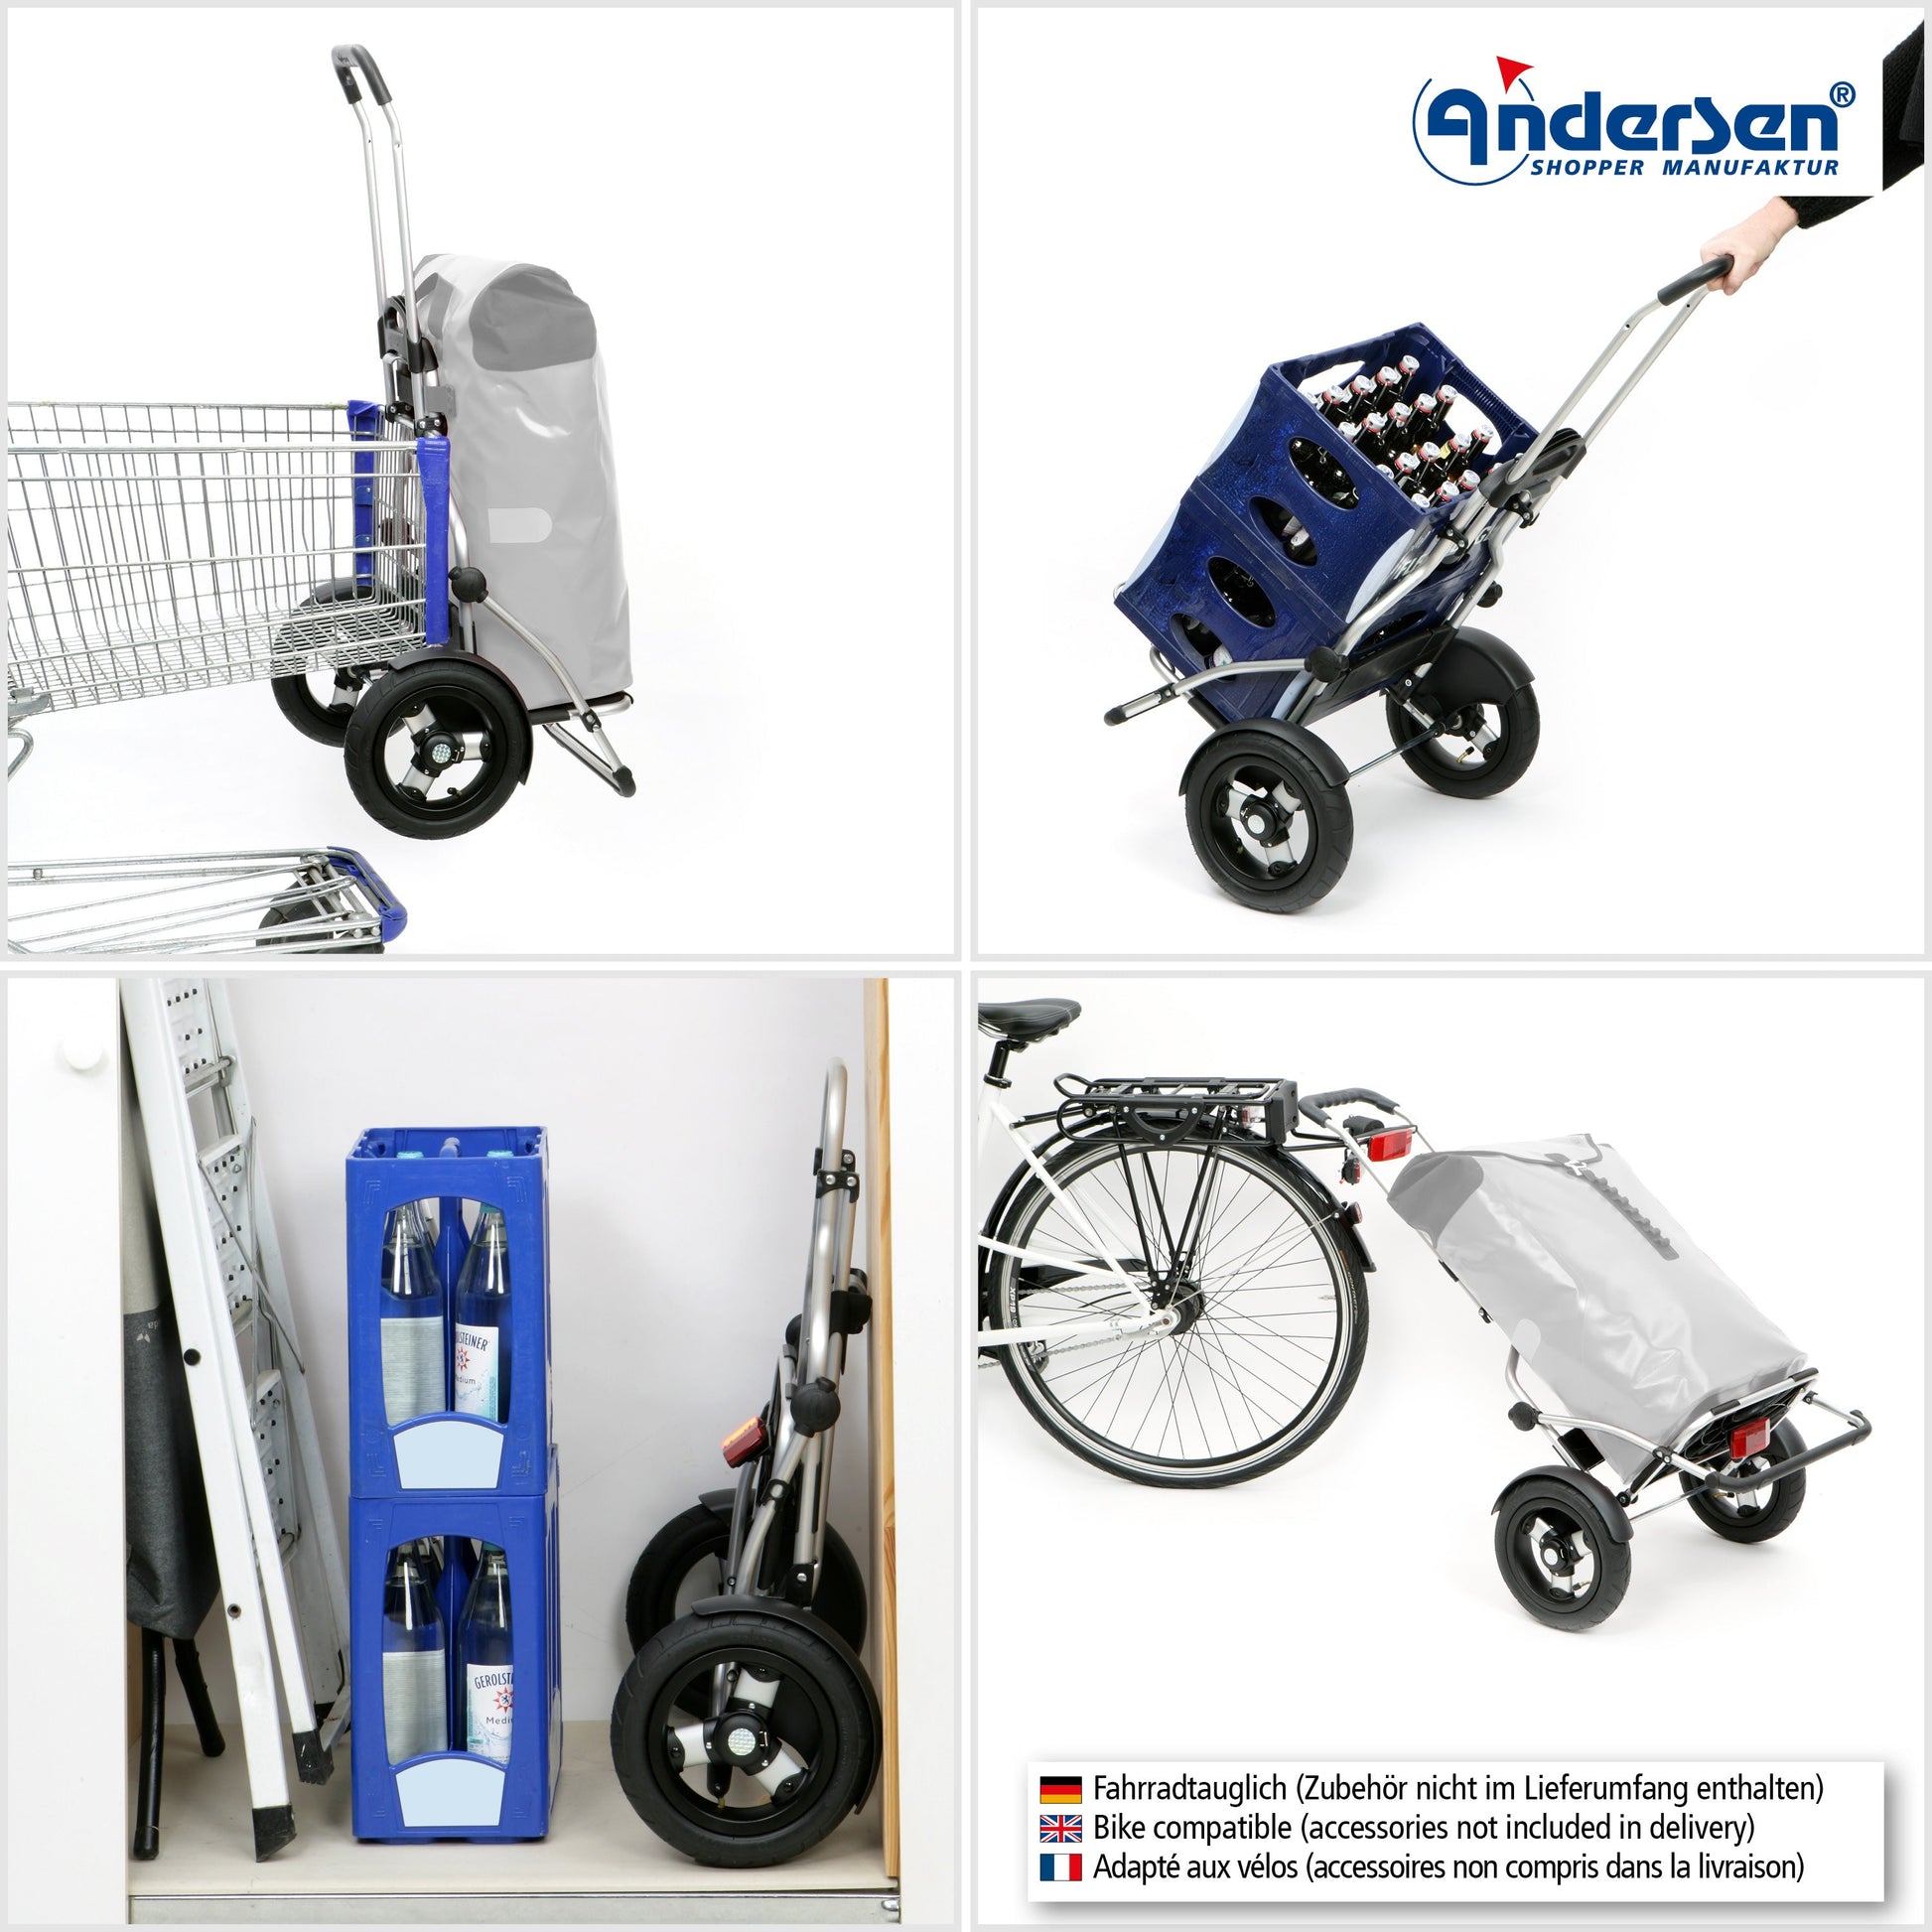 Andersen Shopper Manufaktur-Royal Shopper Plus (Luft-Kugellagerrad 25 cm) Ortlieb petrol-www.shopping-trolley.ch-bild4